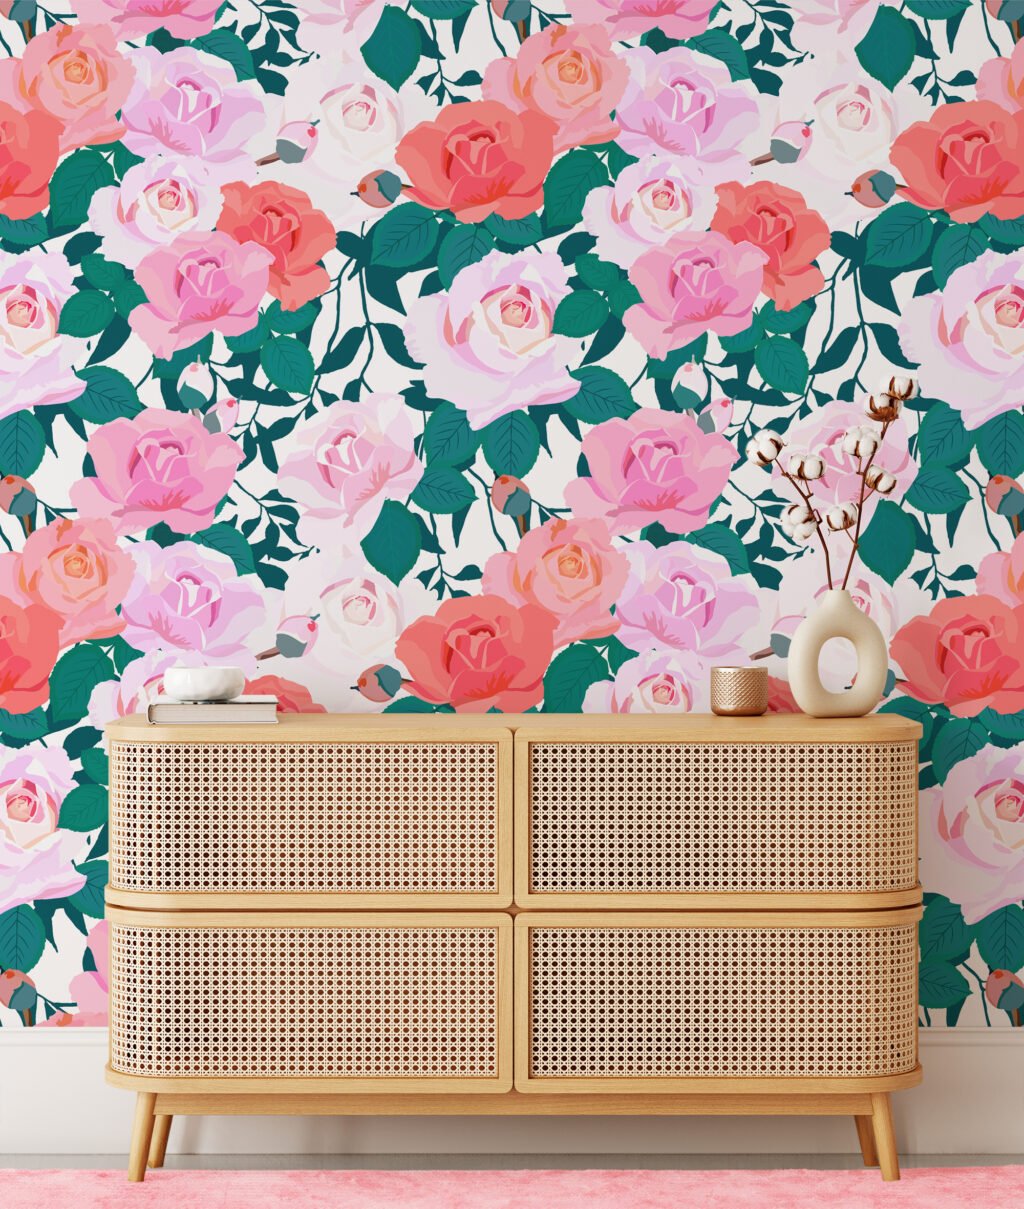 Çiçekli Güller Flat Art Duvar Kağıdı, Romantik Gül Bahçesi 3D Duvar Kağıdı Çiçekli Duvar Kağıtları 4